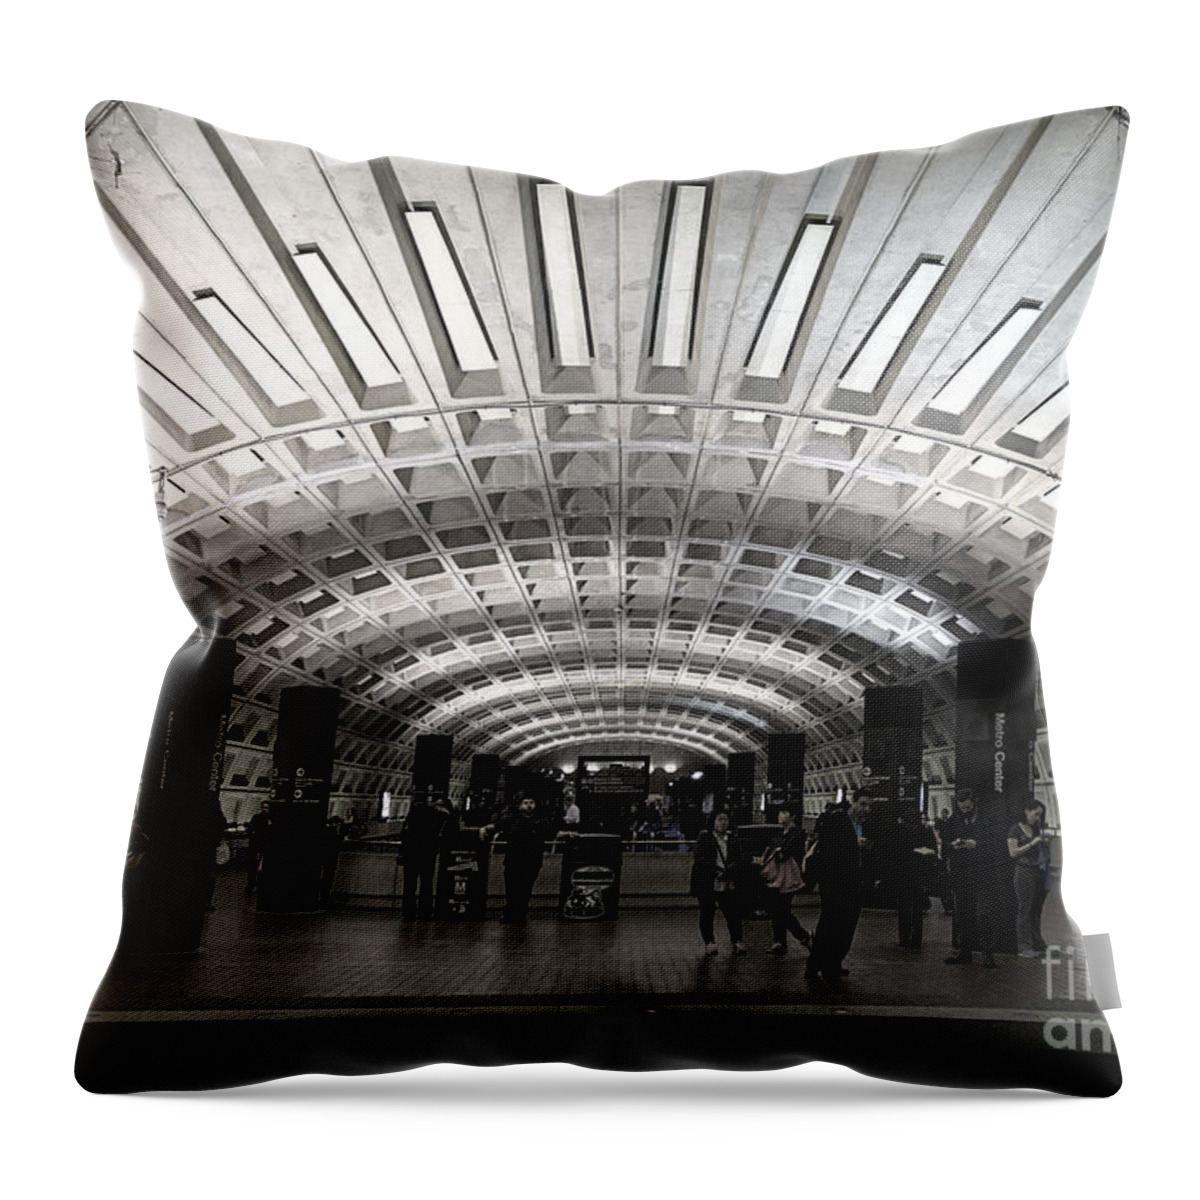 Dc Metro Throw Pillow featuring the photograph Washington DC Metro Metro Center Stop by Art Whitton